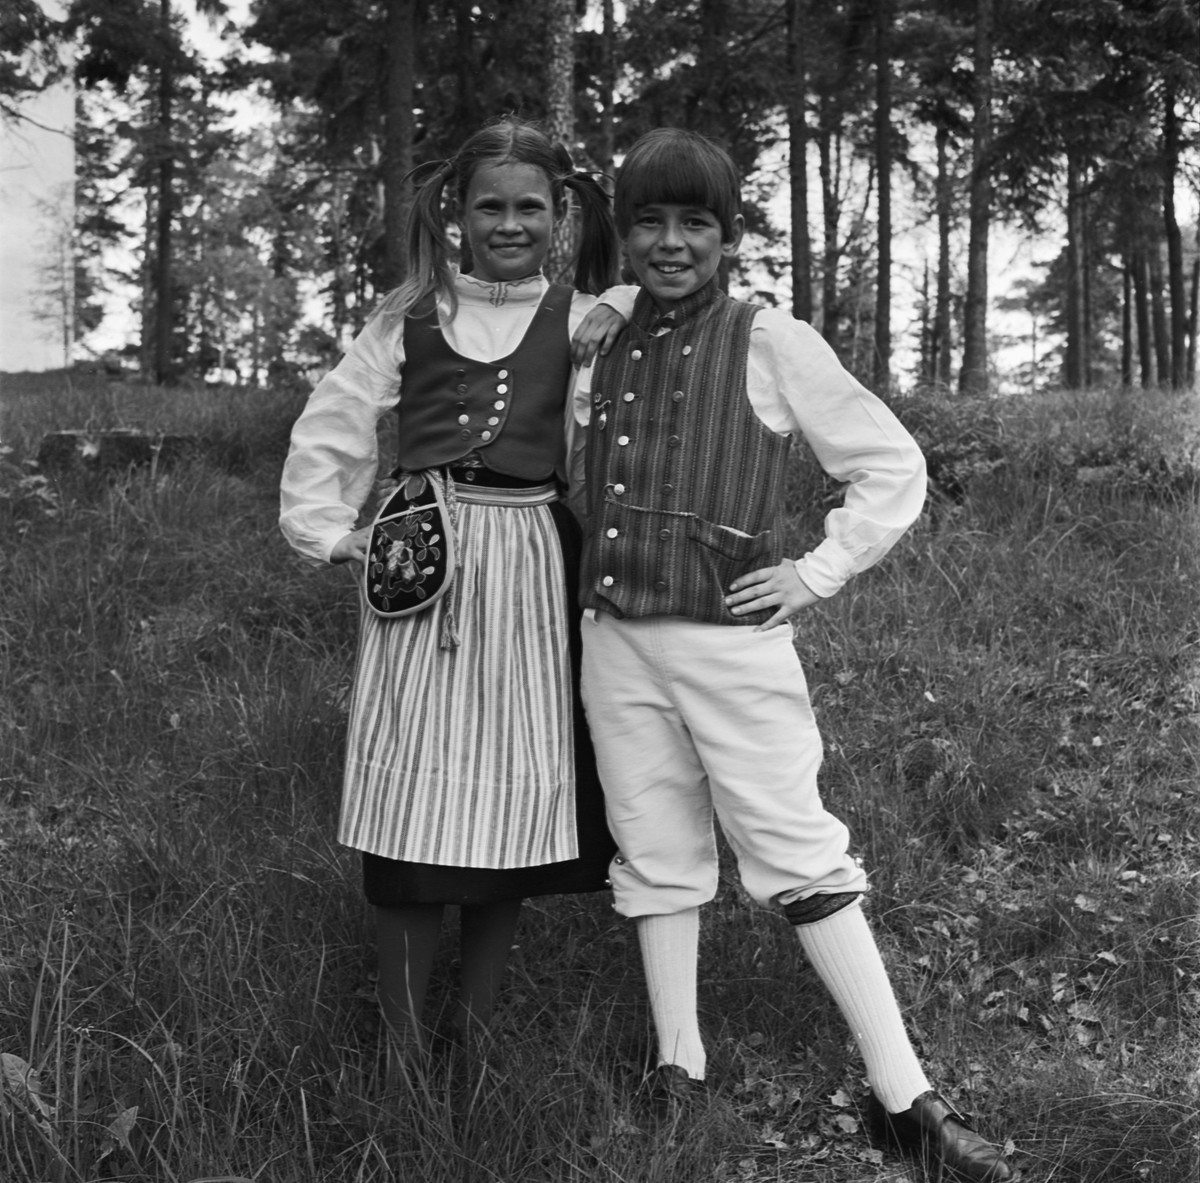 Uplandsschottisen, Tierp, Uppland 1969